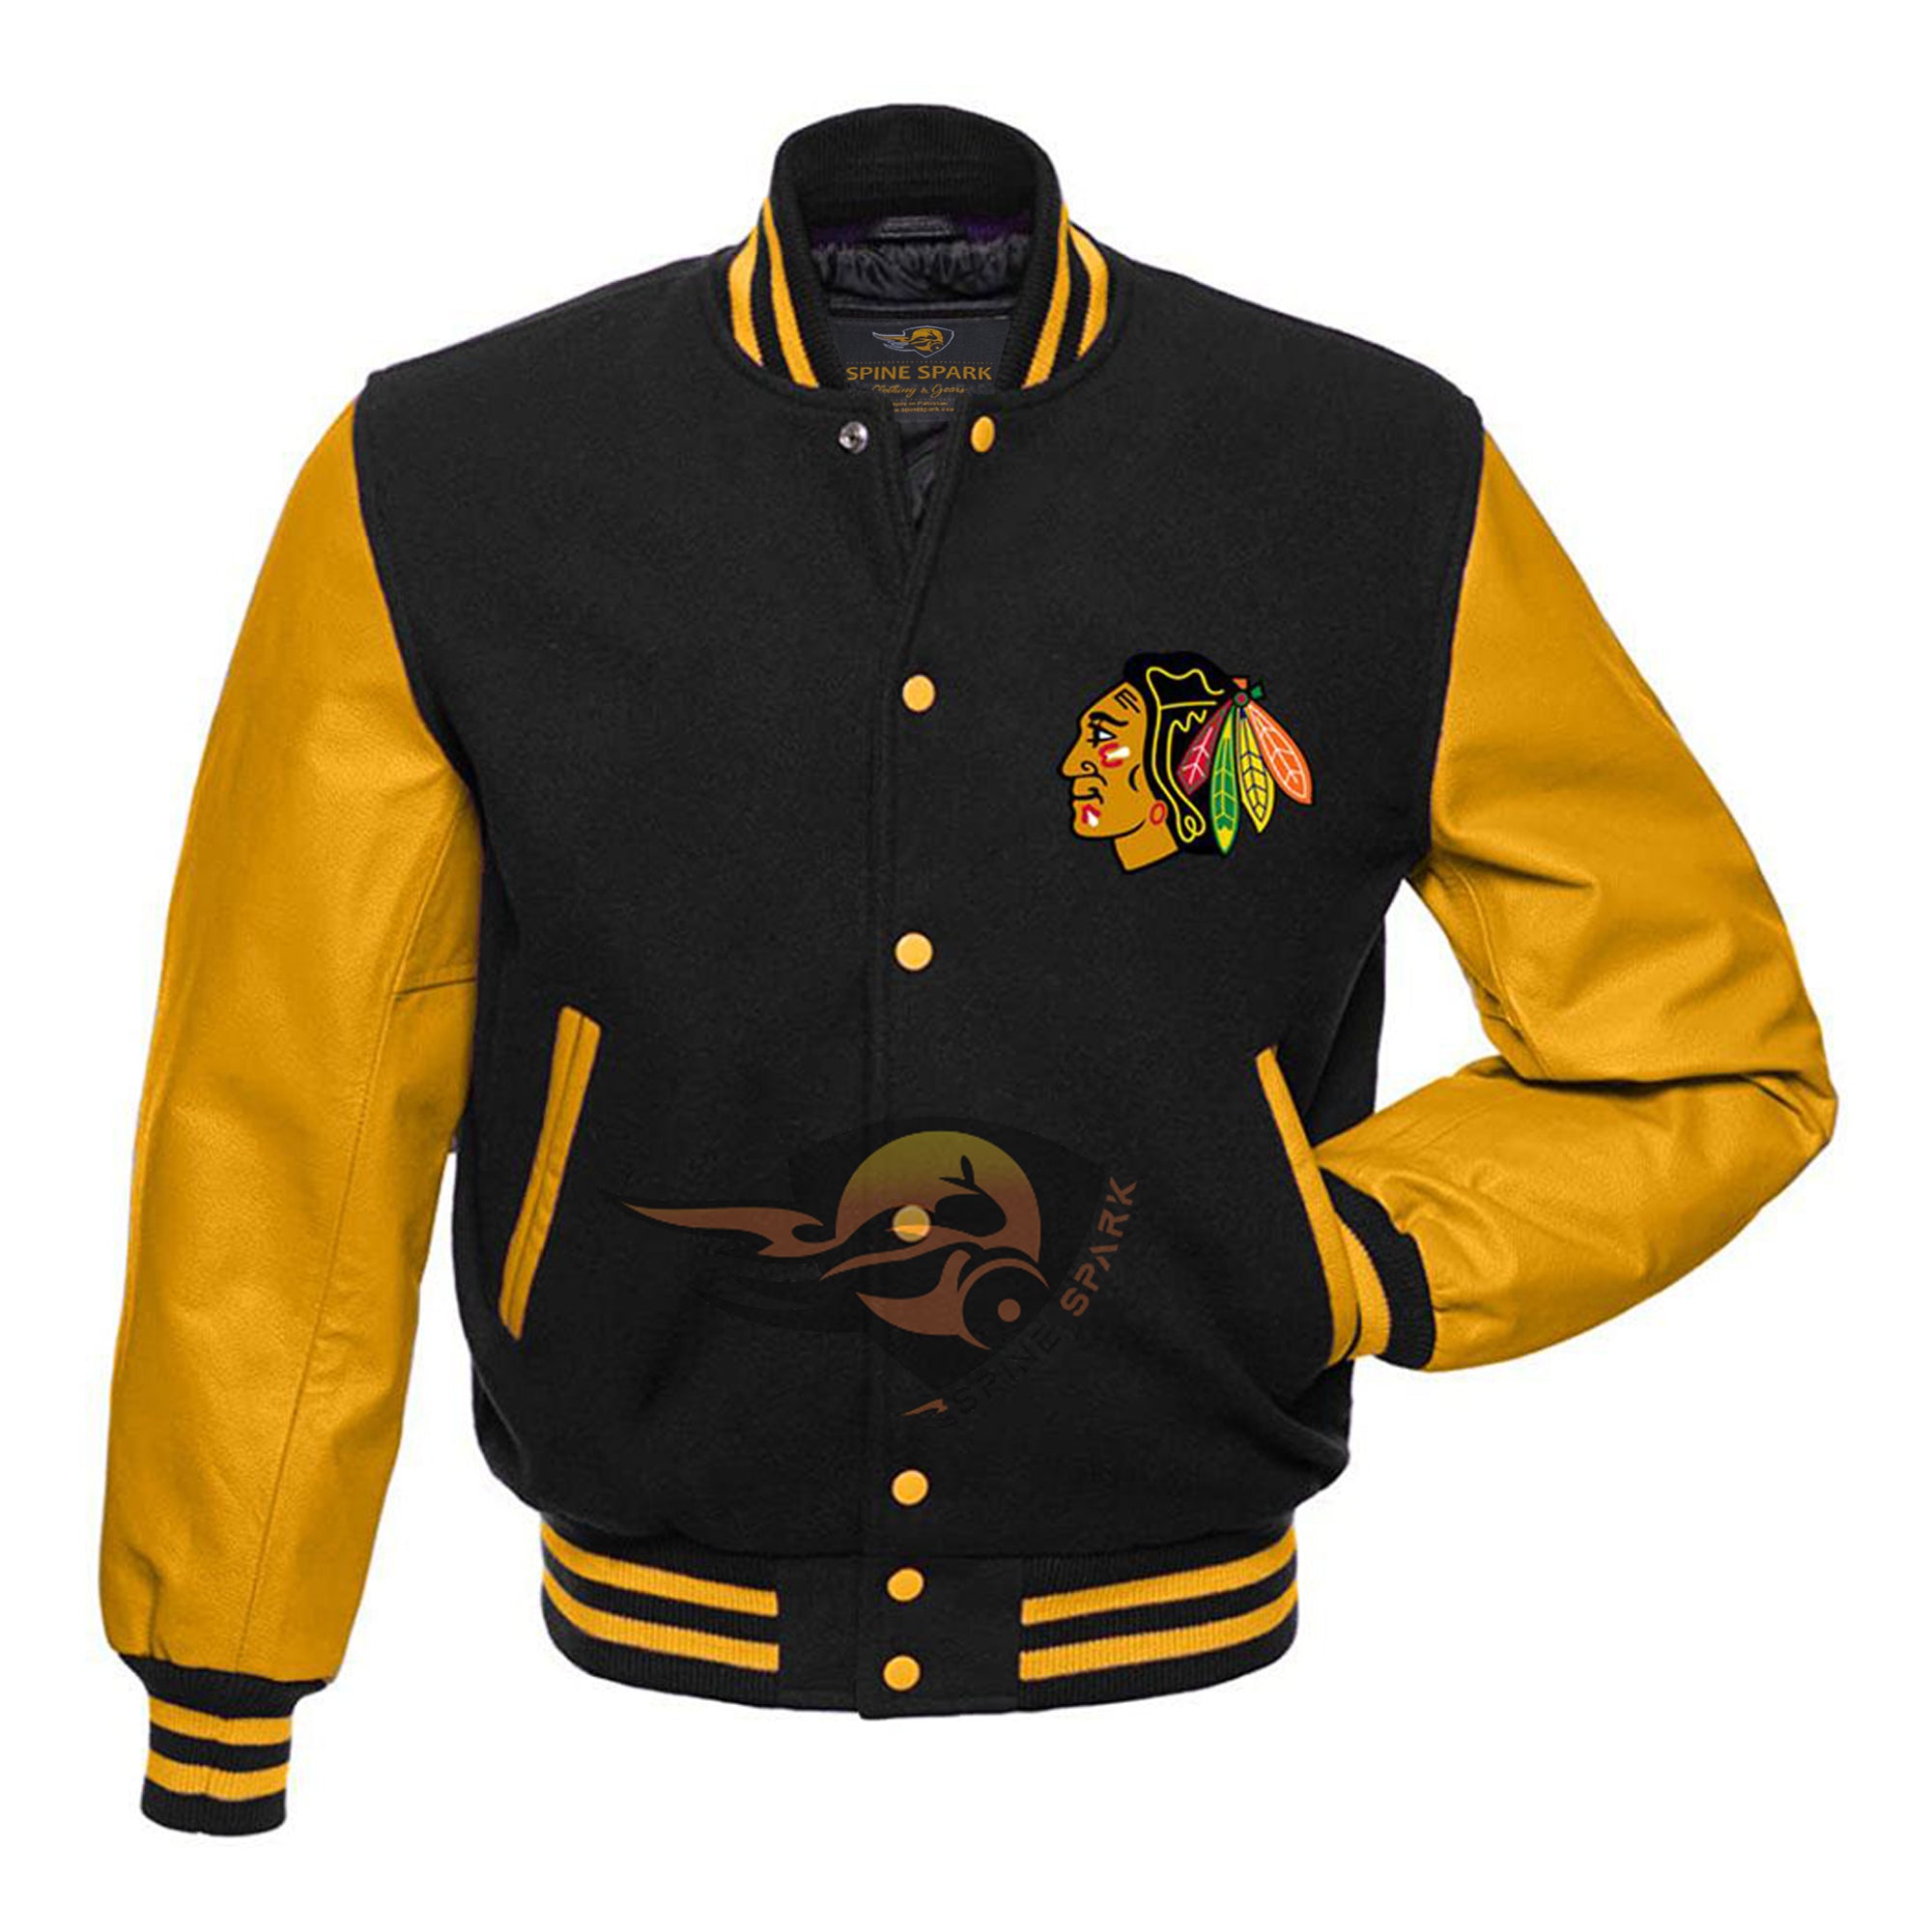 Black Chicago Black Hawks Vintage NHL Jacket By SpineSpark